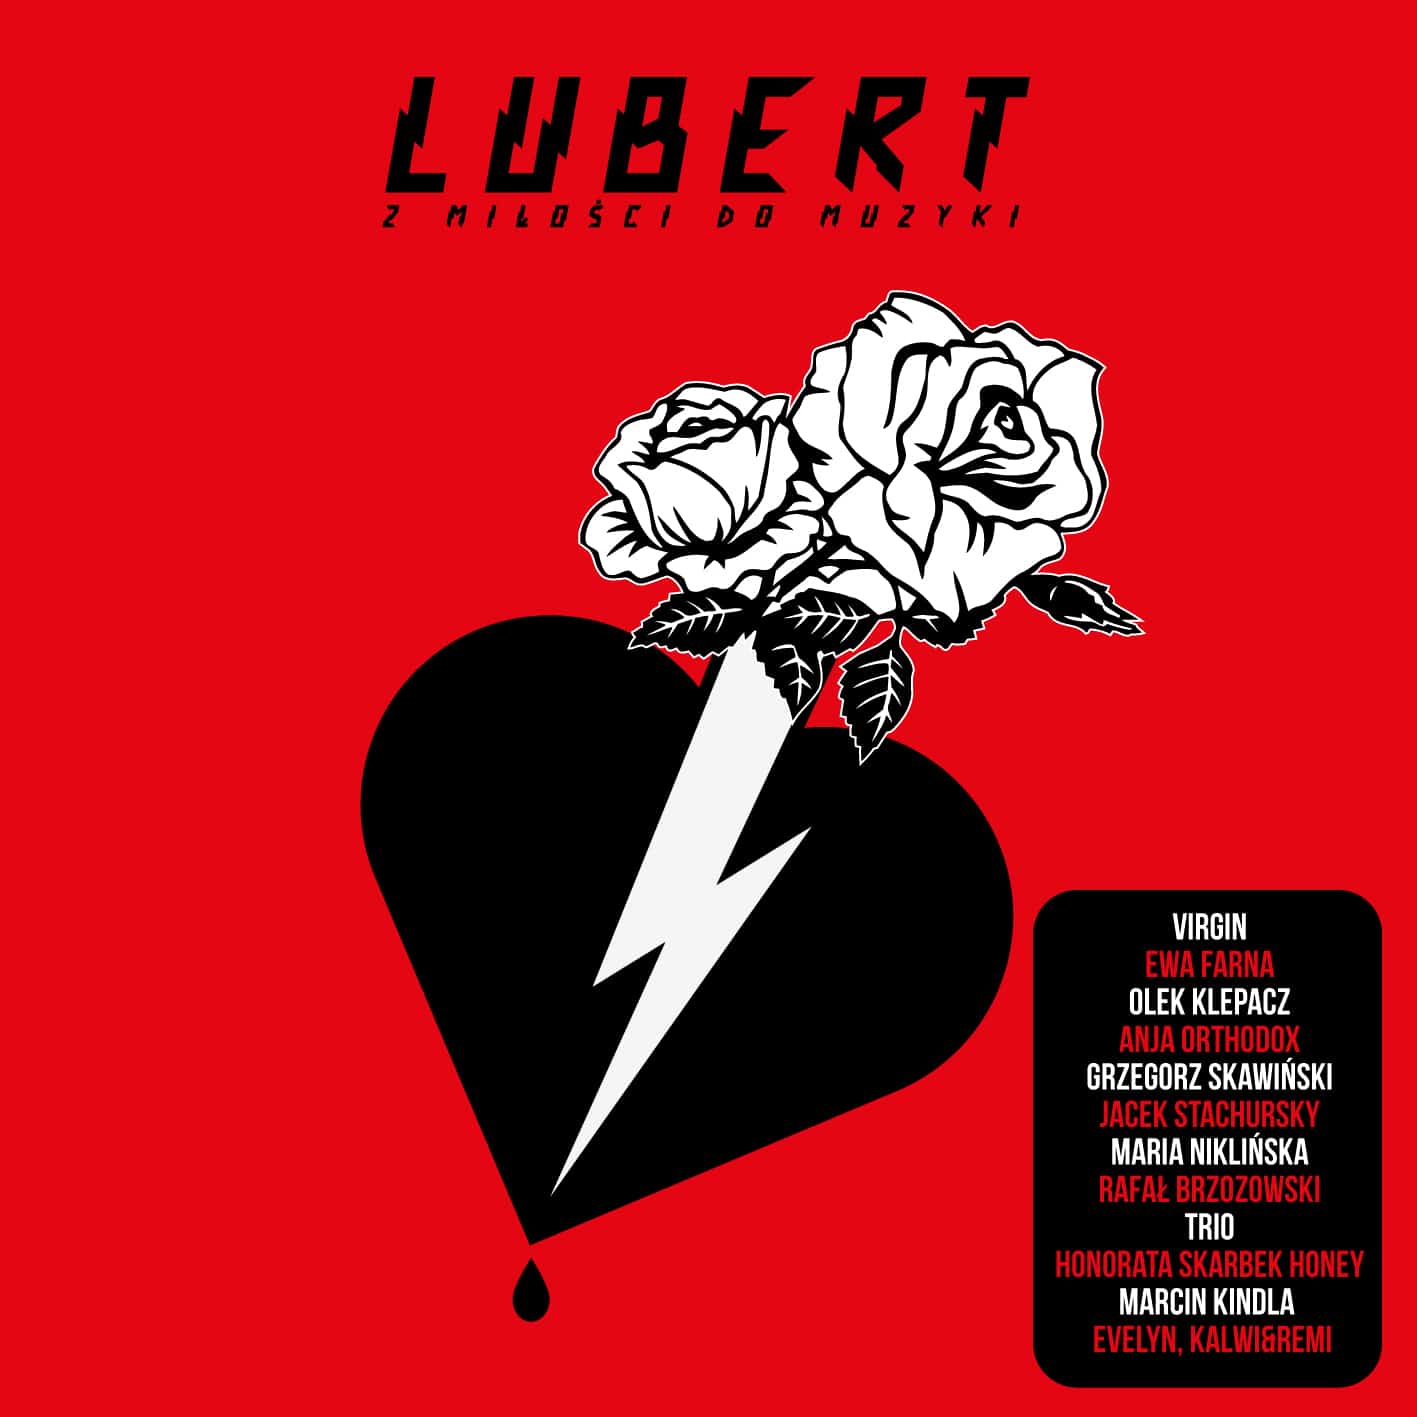 Tomek Lubert - nowy album - Lubert z miłości do Muzyki